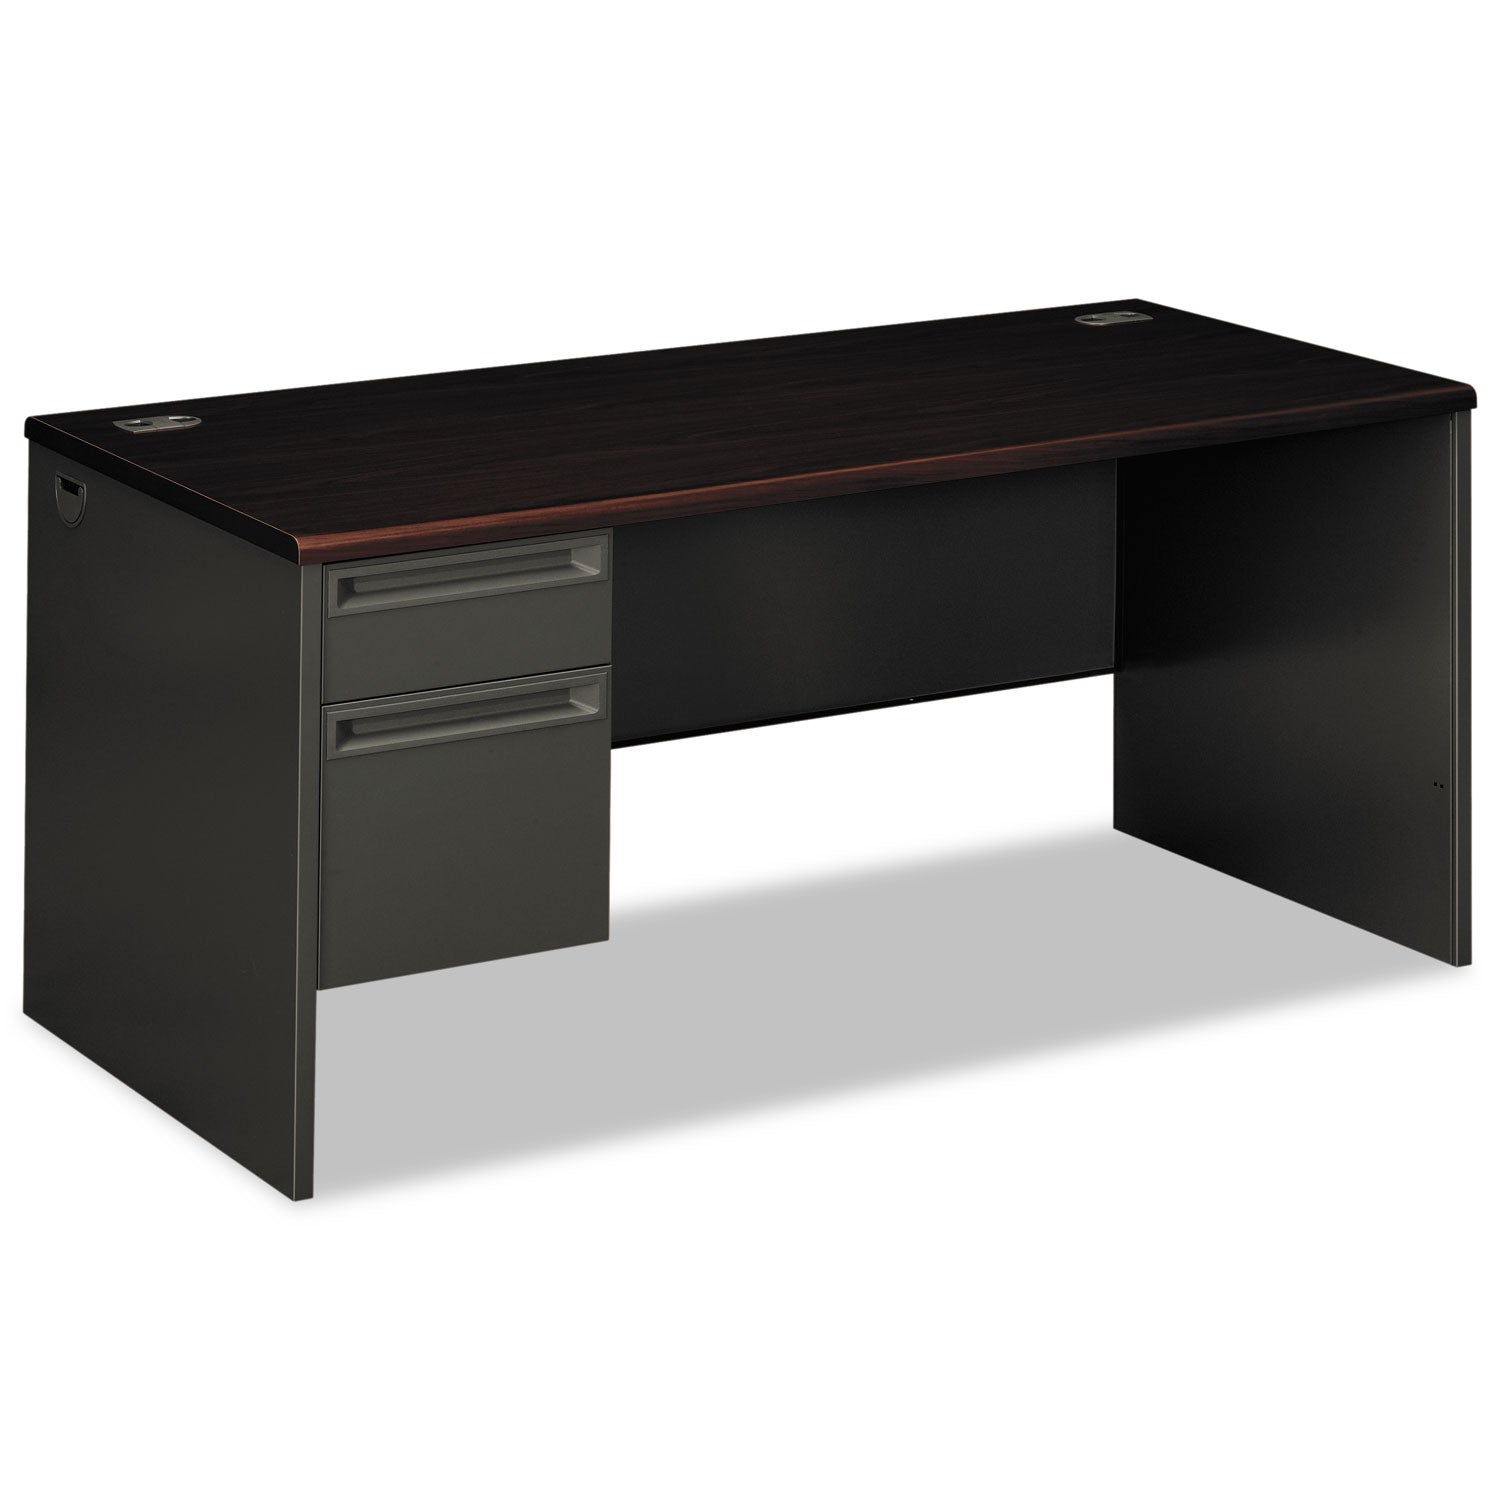 38000 Series Left Pedestal Desk, 66" x 30" x 29.5", Mahogany/Charcoal - 